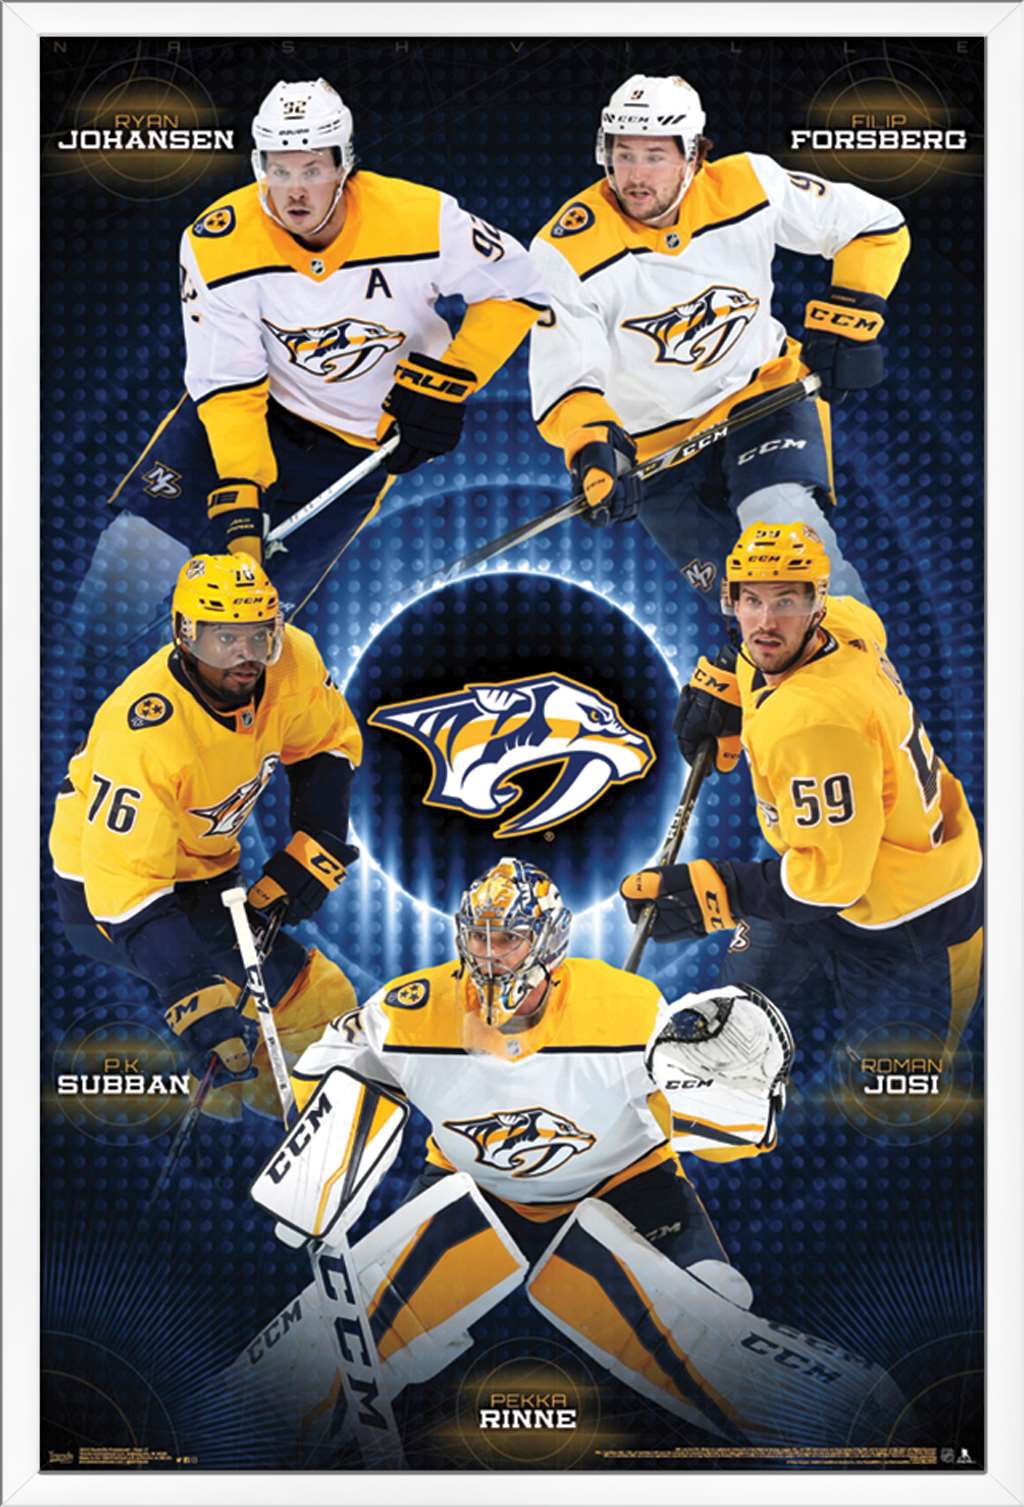 NHL Nashville Predators - Team Poster